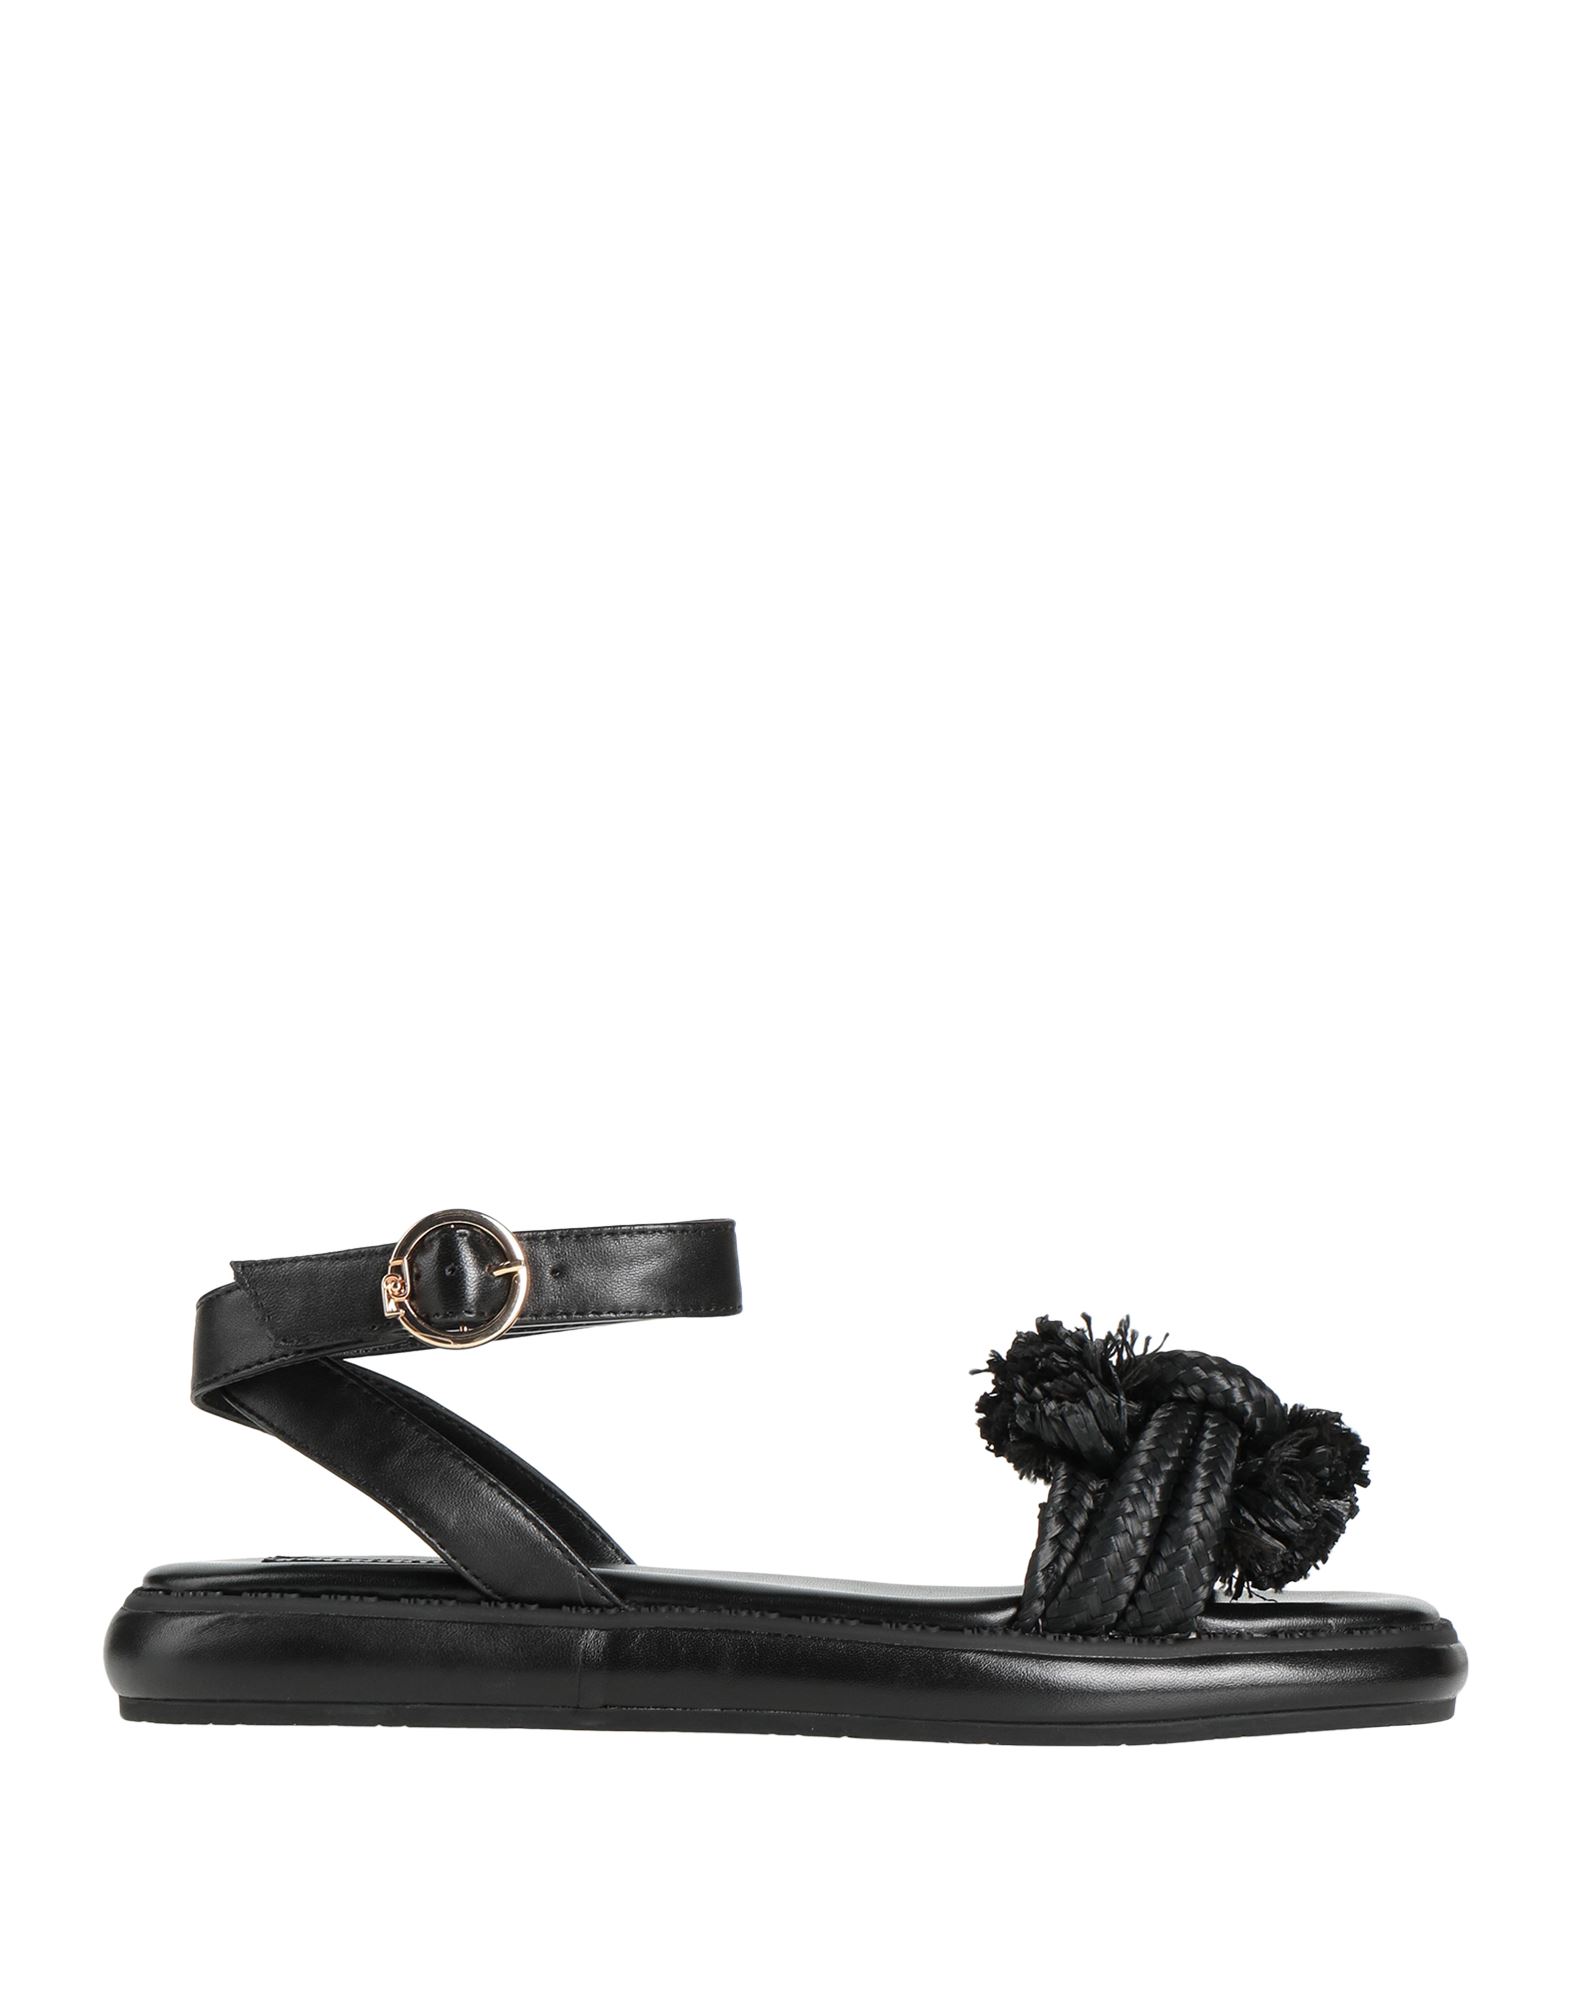 Shop Liu •jo Woman Sandals Black Size 8 Soft Leather, Textile Fibers